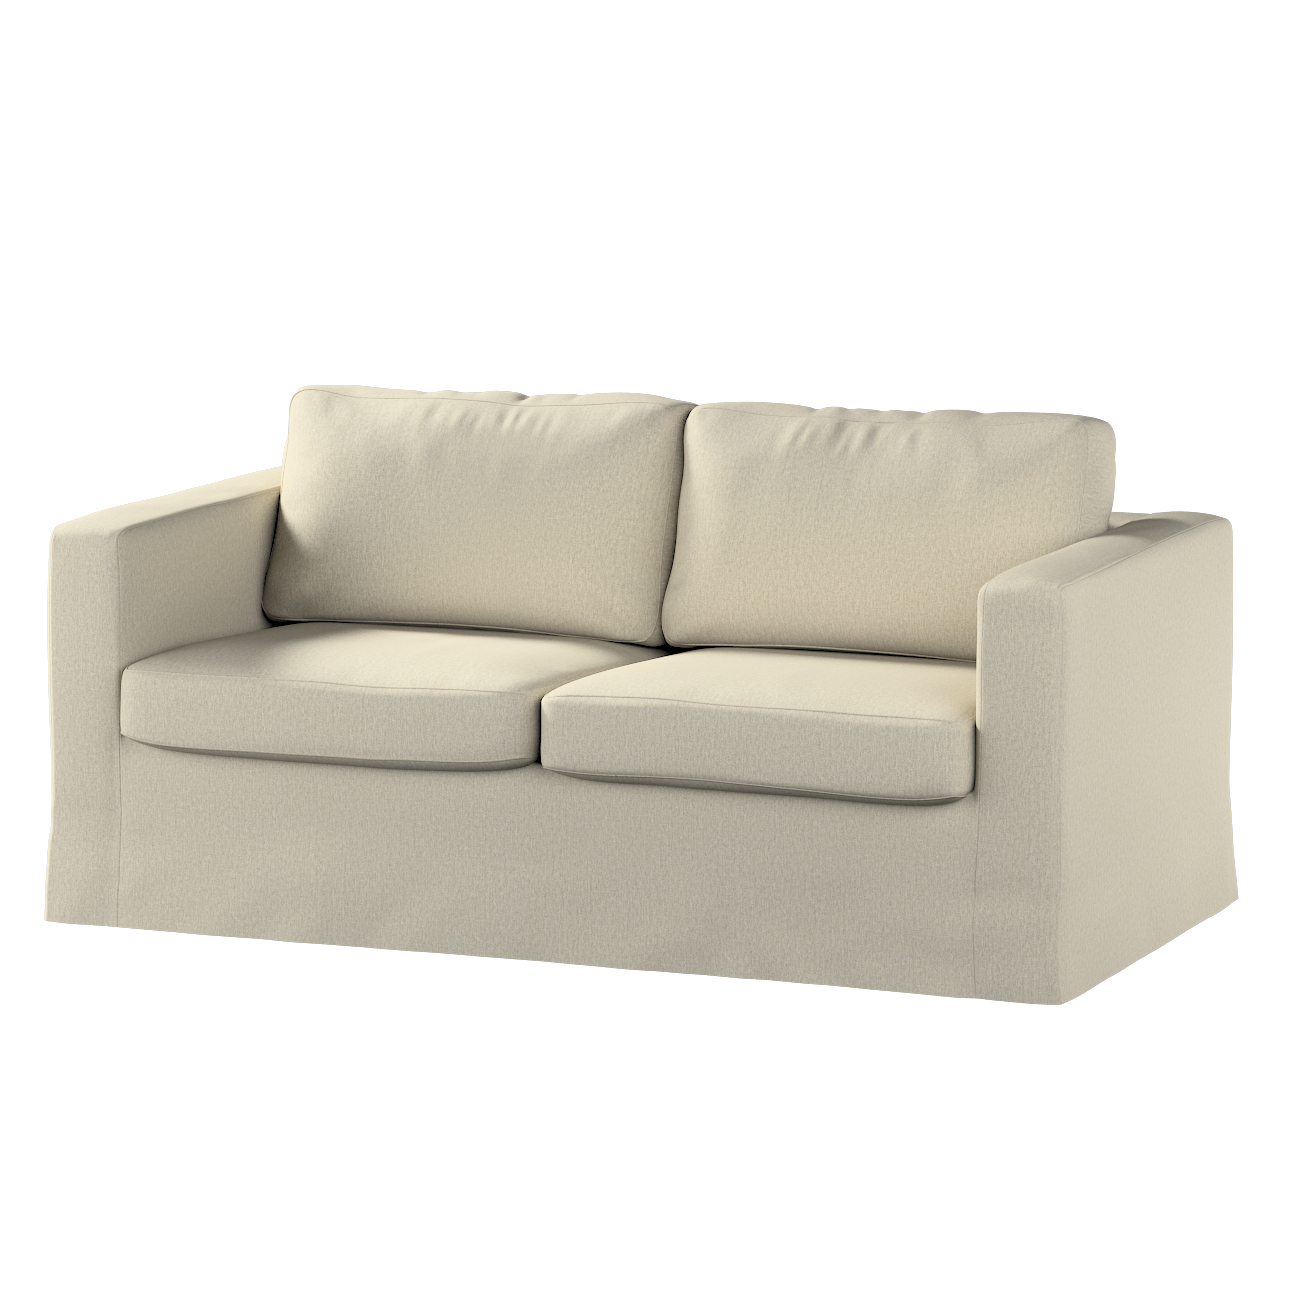 Bezug für Karlstad 2-Sitzer Sofa nicht ausklappbar, lang, beige-grau, Sofah günstig online kaufen